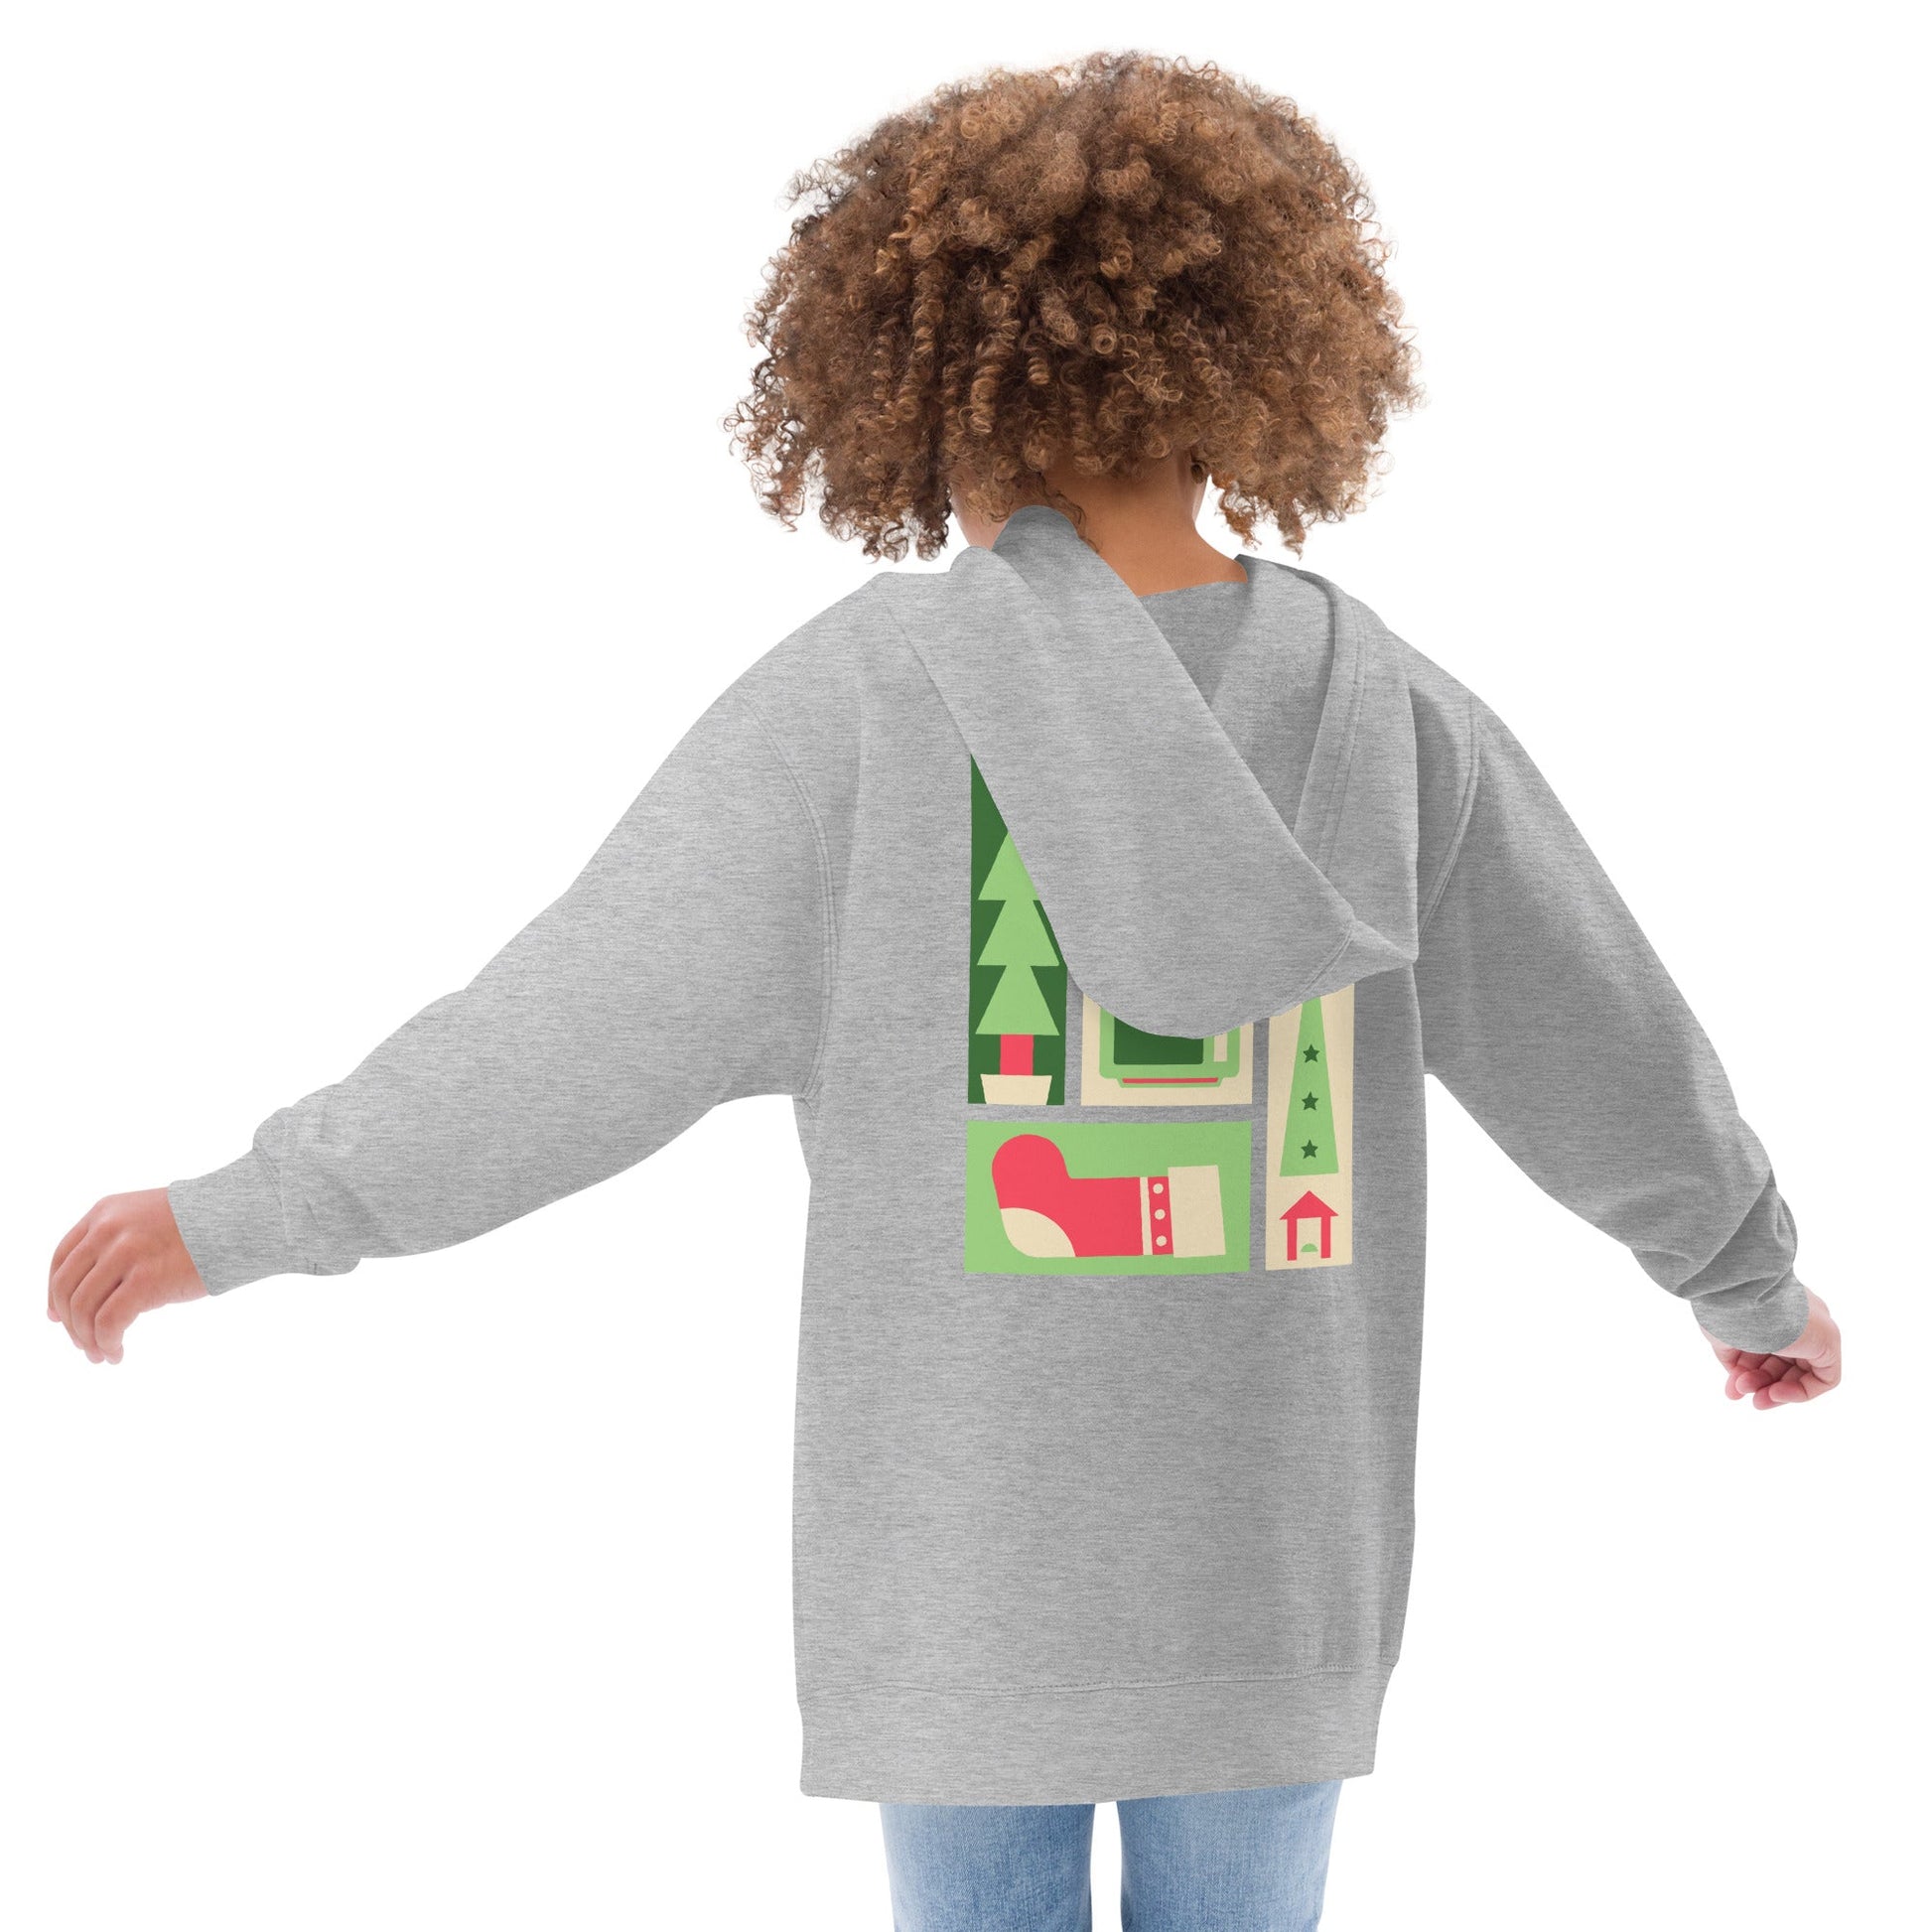 Christmas Movie | Kids fleece hoodie